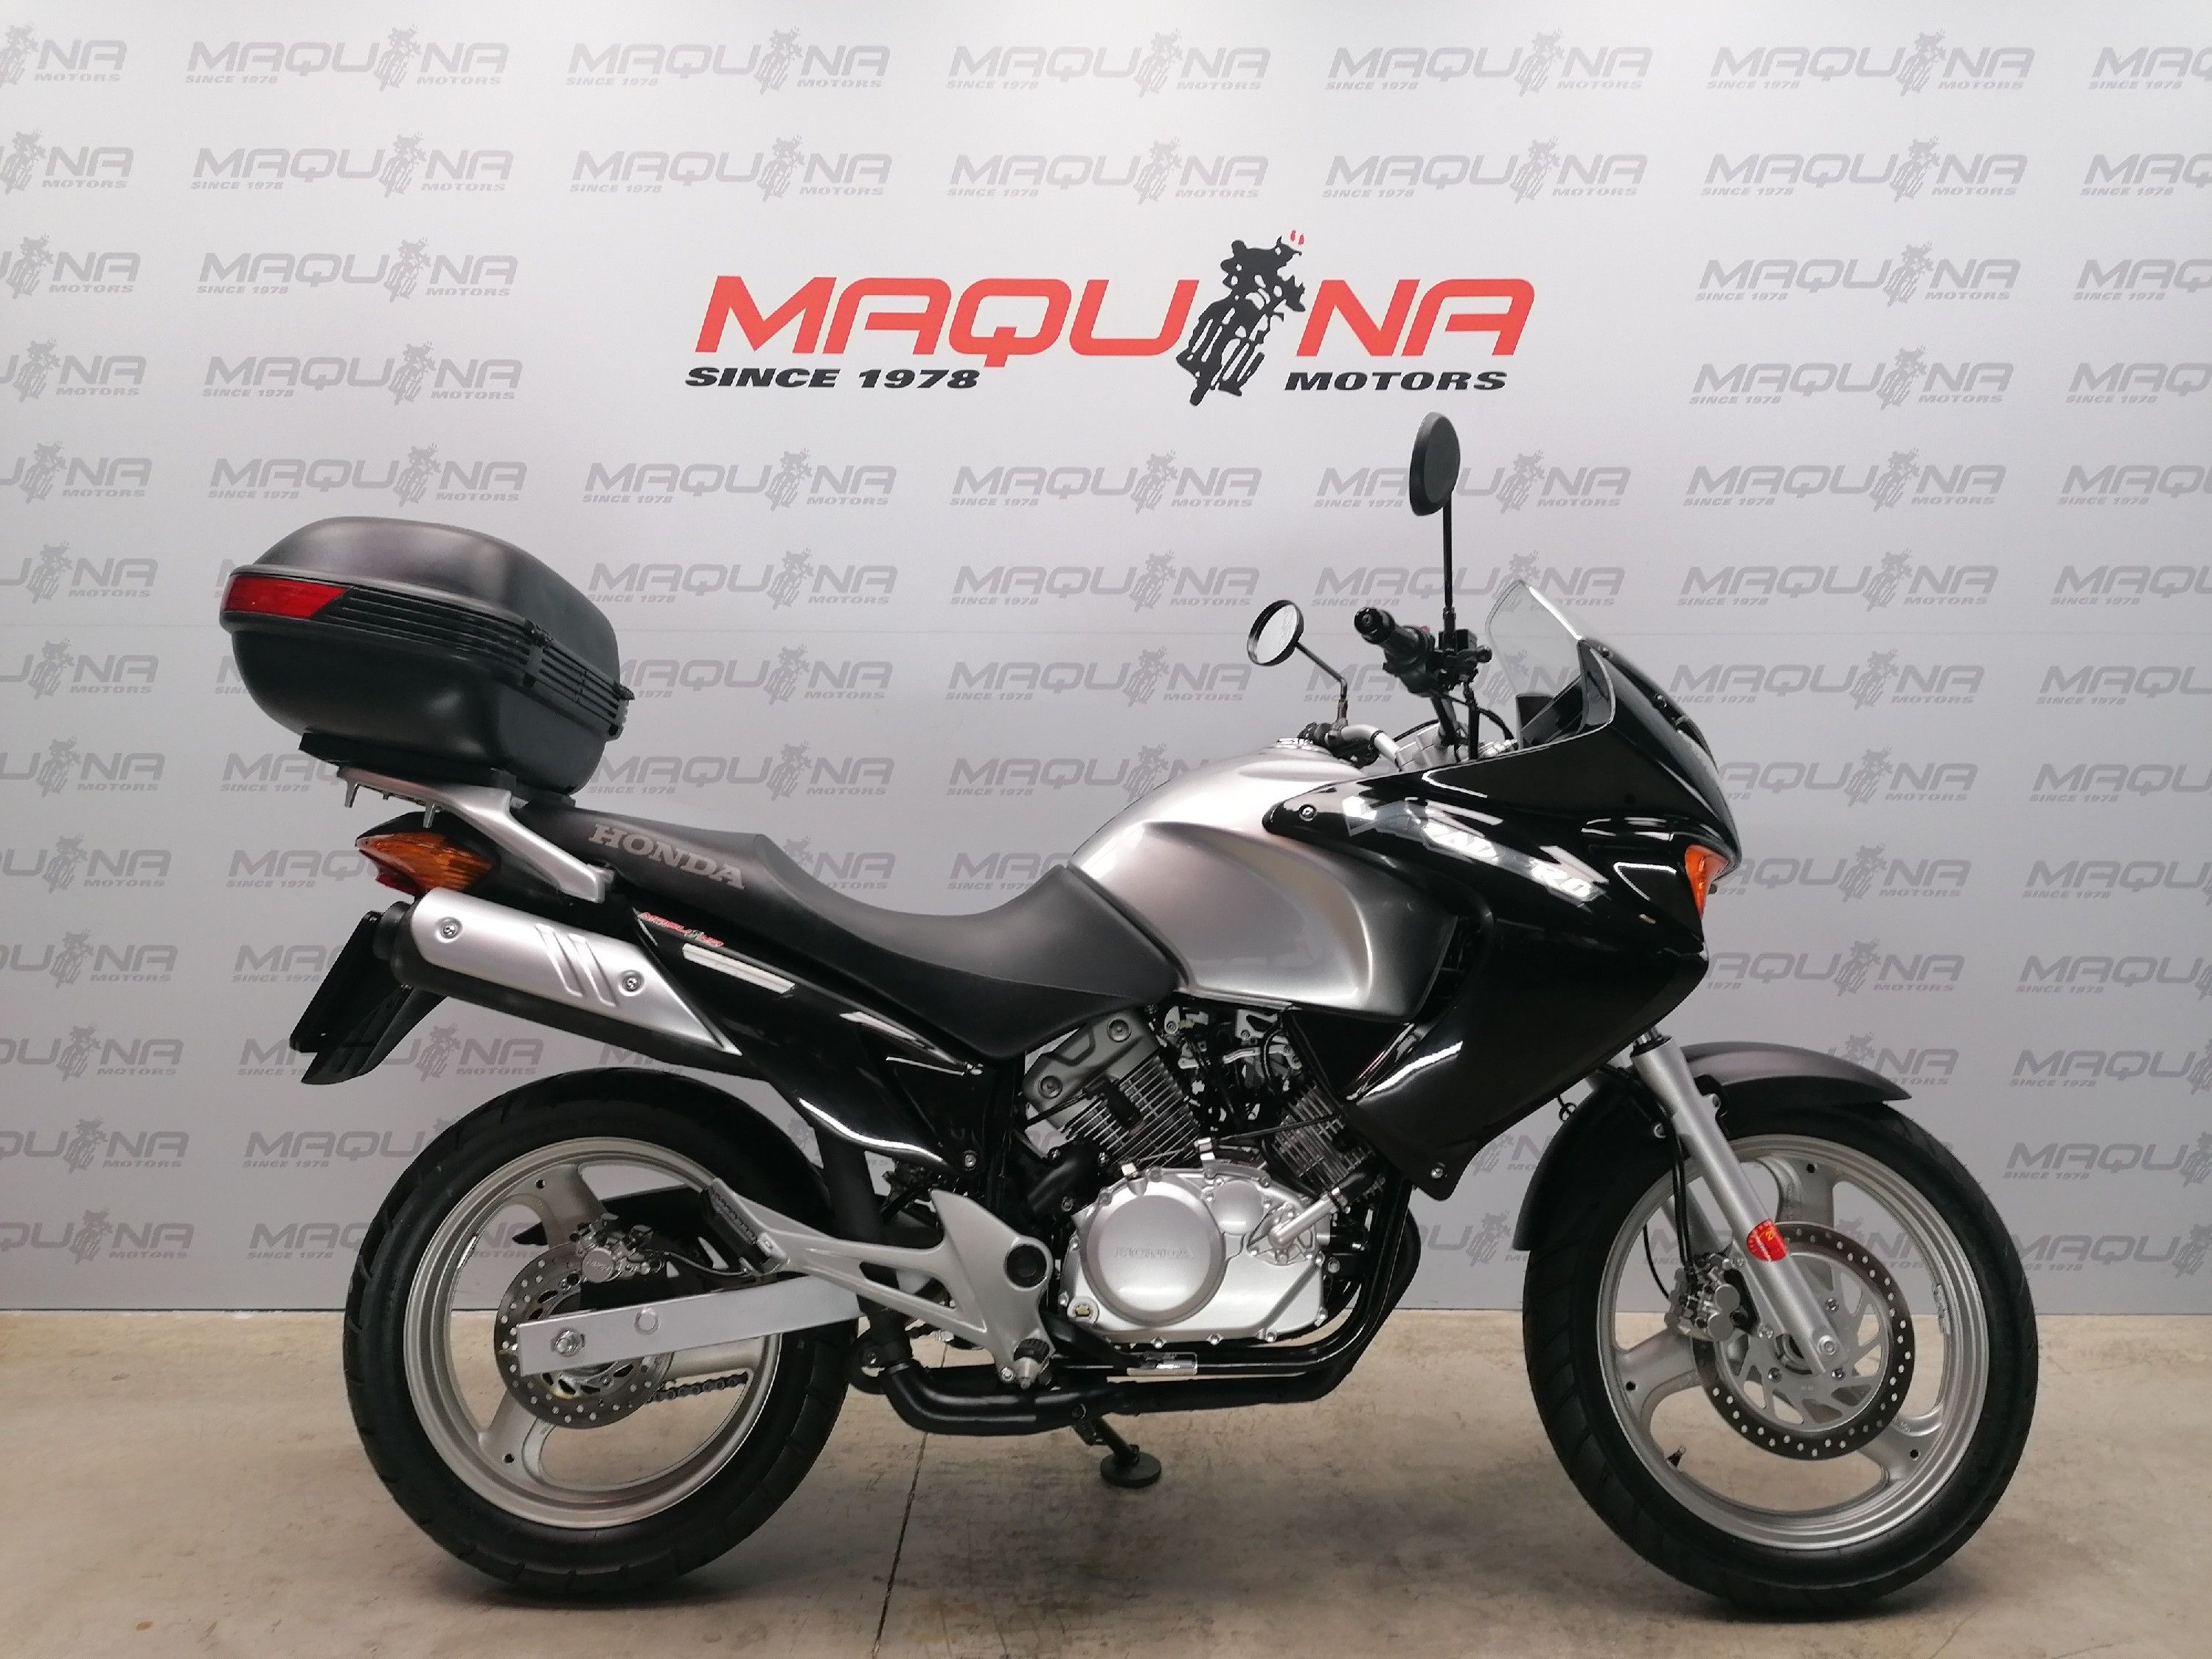 HONDA XL 125 – Maquina motos ocasión